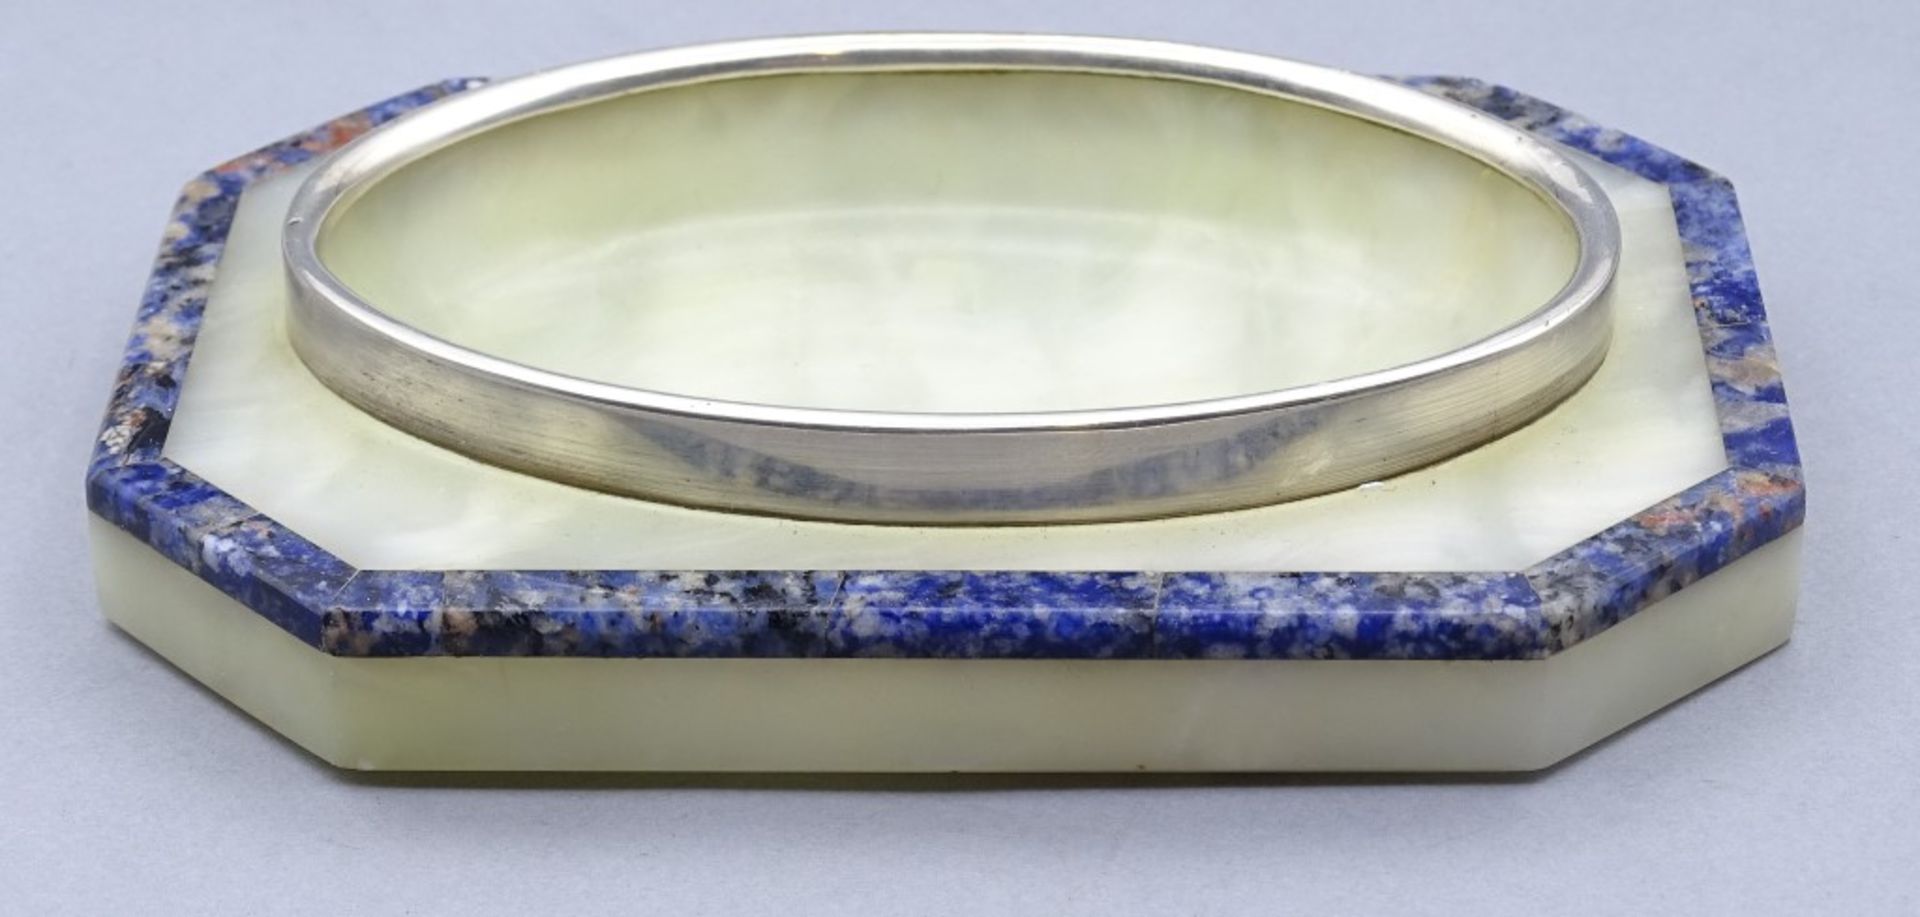 Seifenschale mit Silberrand,Onyx und Lapislazuli Boden,13,7x9,5cm - Bild 2 aus 5